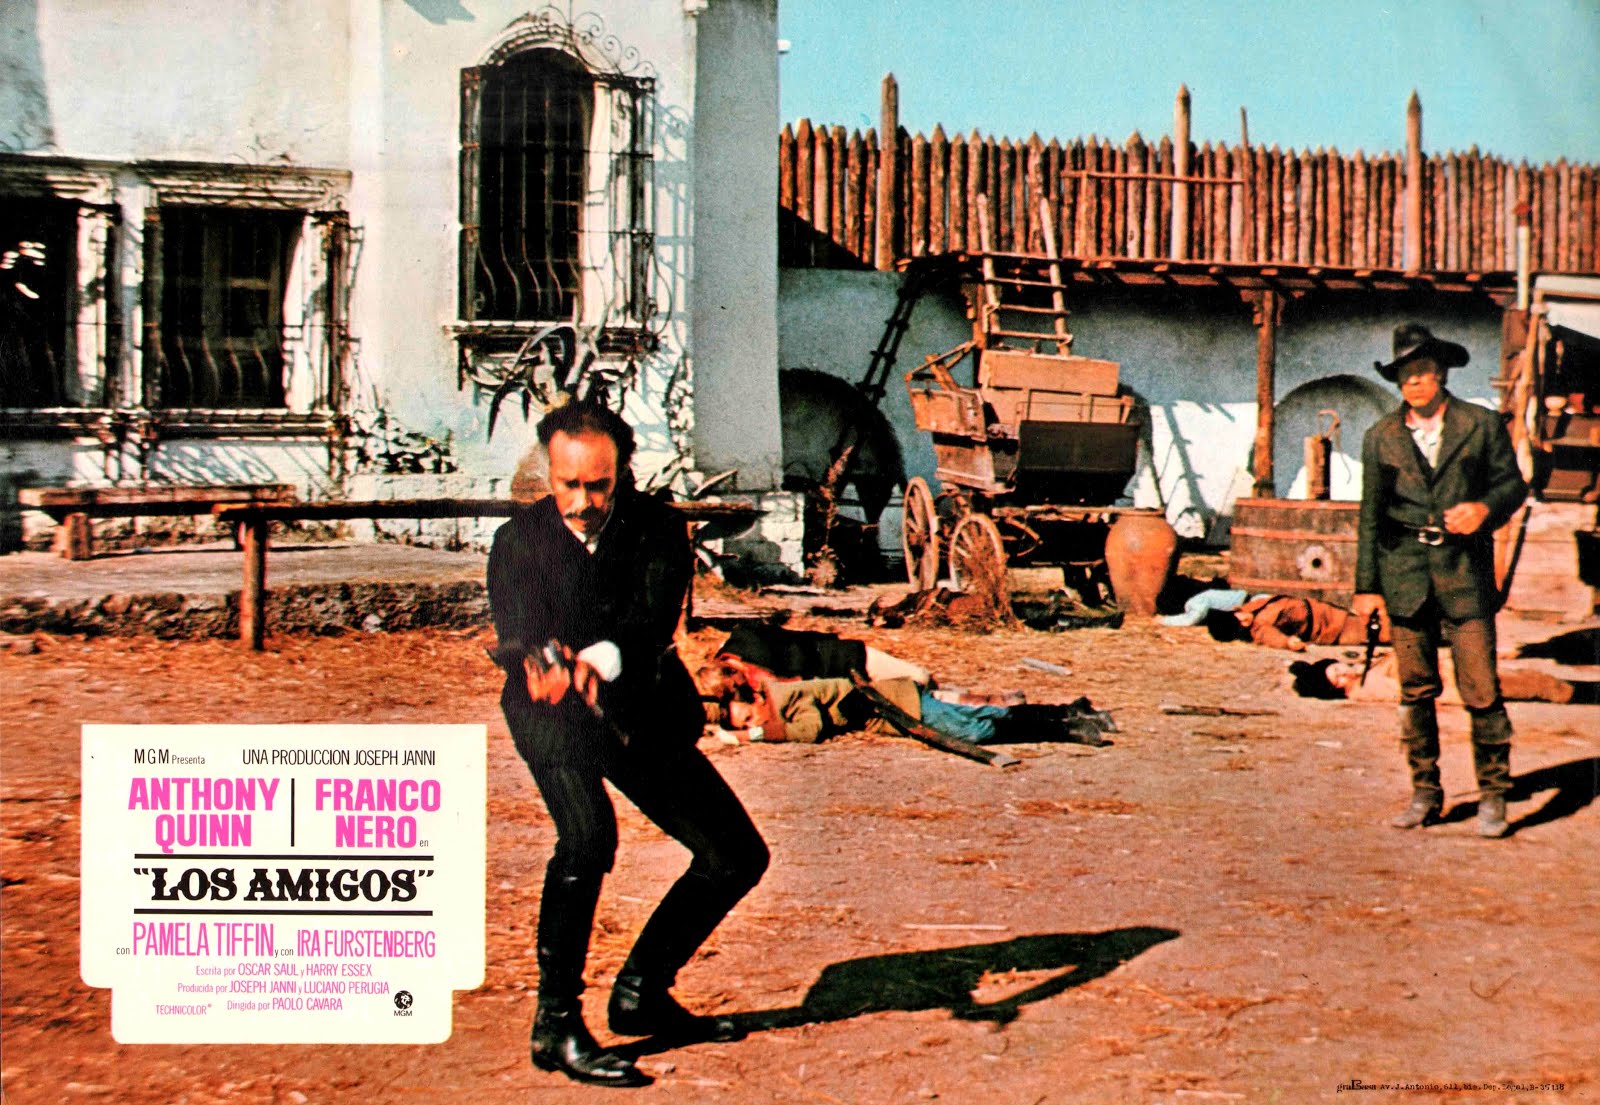 Los amigos (1972) Paolo Cavara - Los amigos (11.09.1972 / 1972)